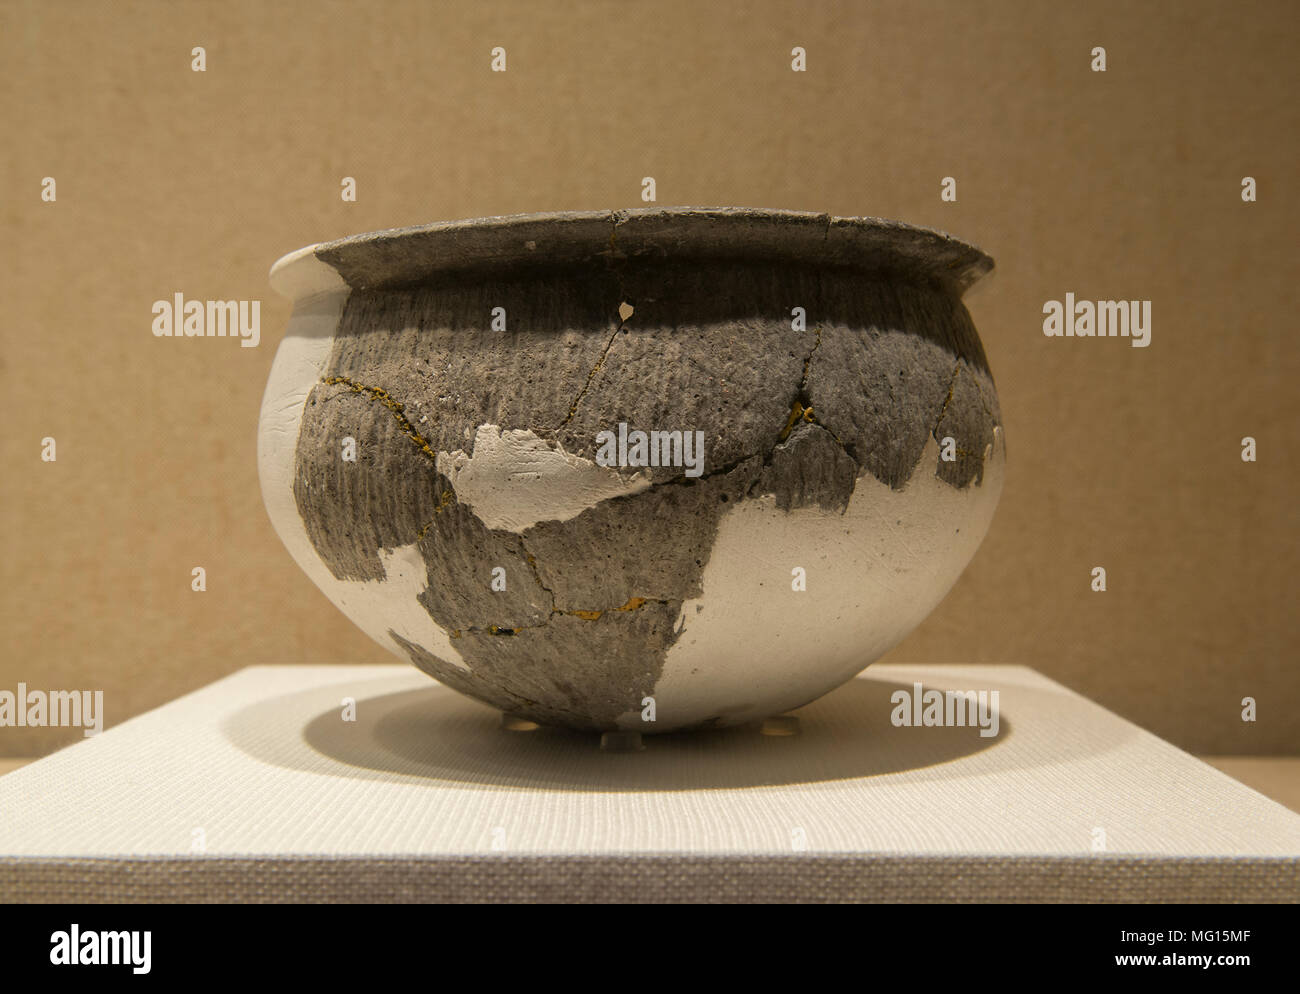 A pottery Fu or Pot of The Kuahuqiao Culture in Zhejiang Museum in Hangzhou, China. Stock Photo